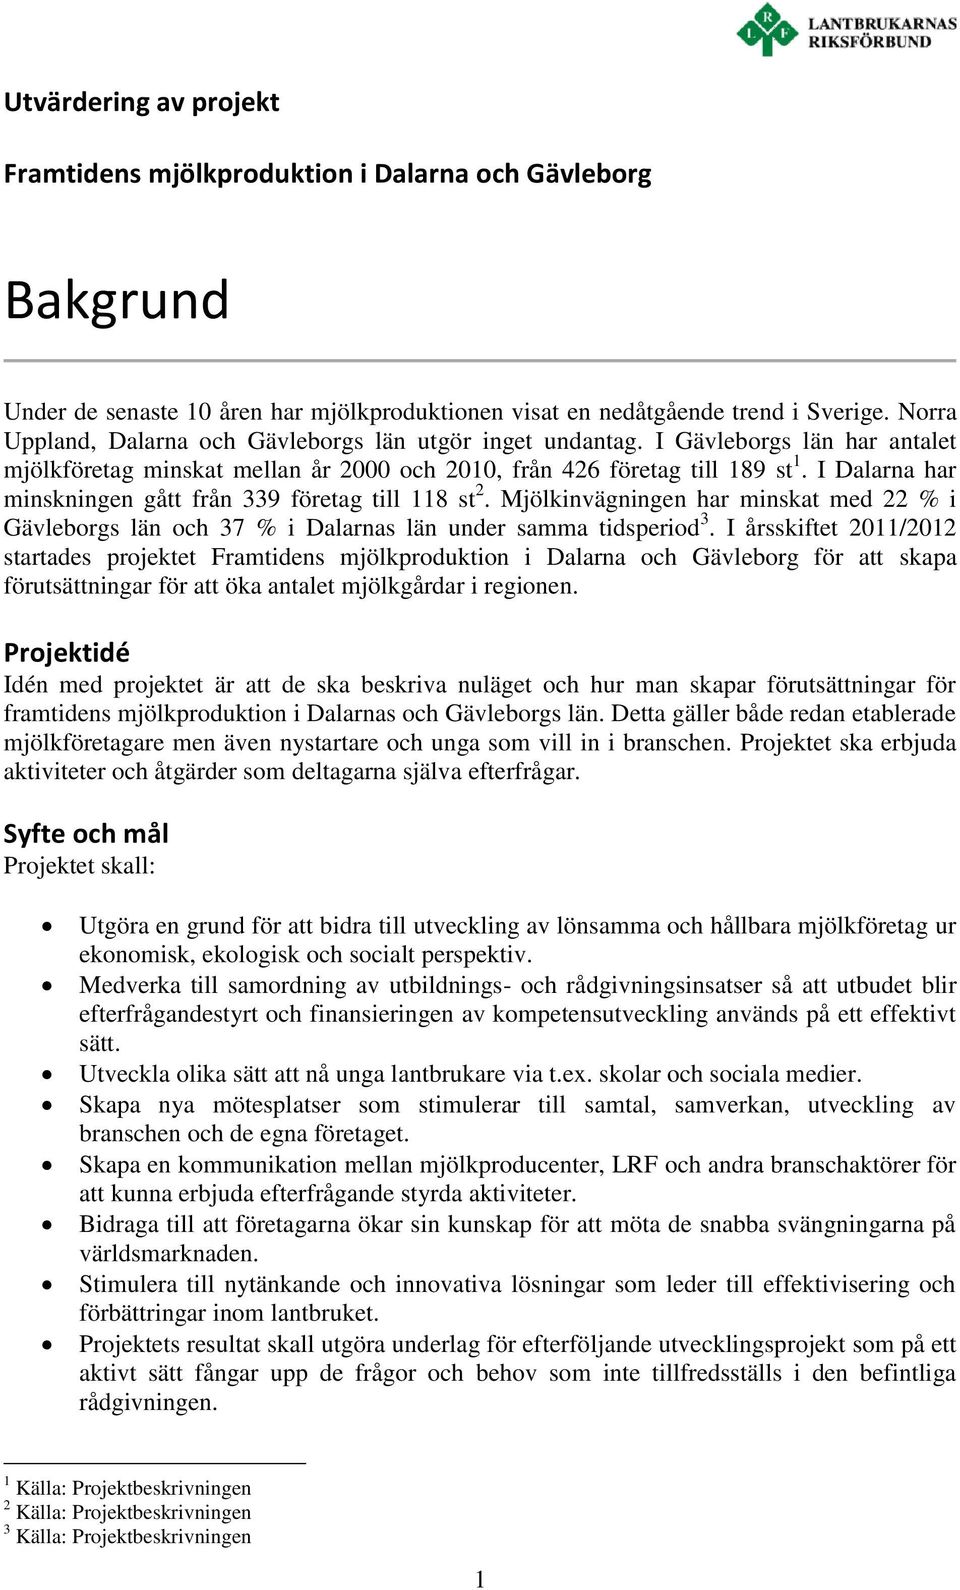 I Dalarna har minskningen gått från 339 företag till 118 st 2. Mjölkinvägningen har minskat med 22 % i Gävleborgs län och 37 % i Dalarnas län under samma tidsperiod 3.